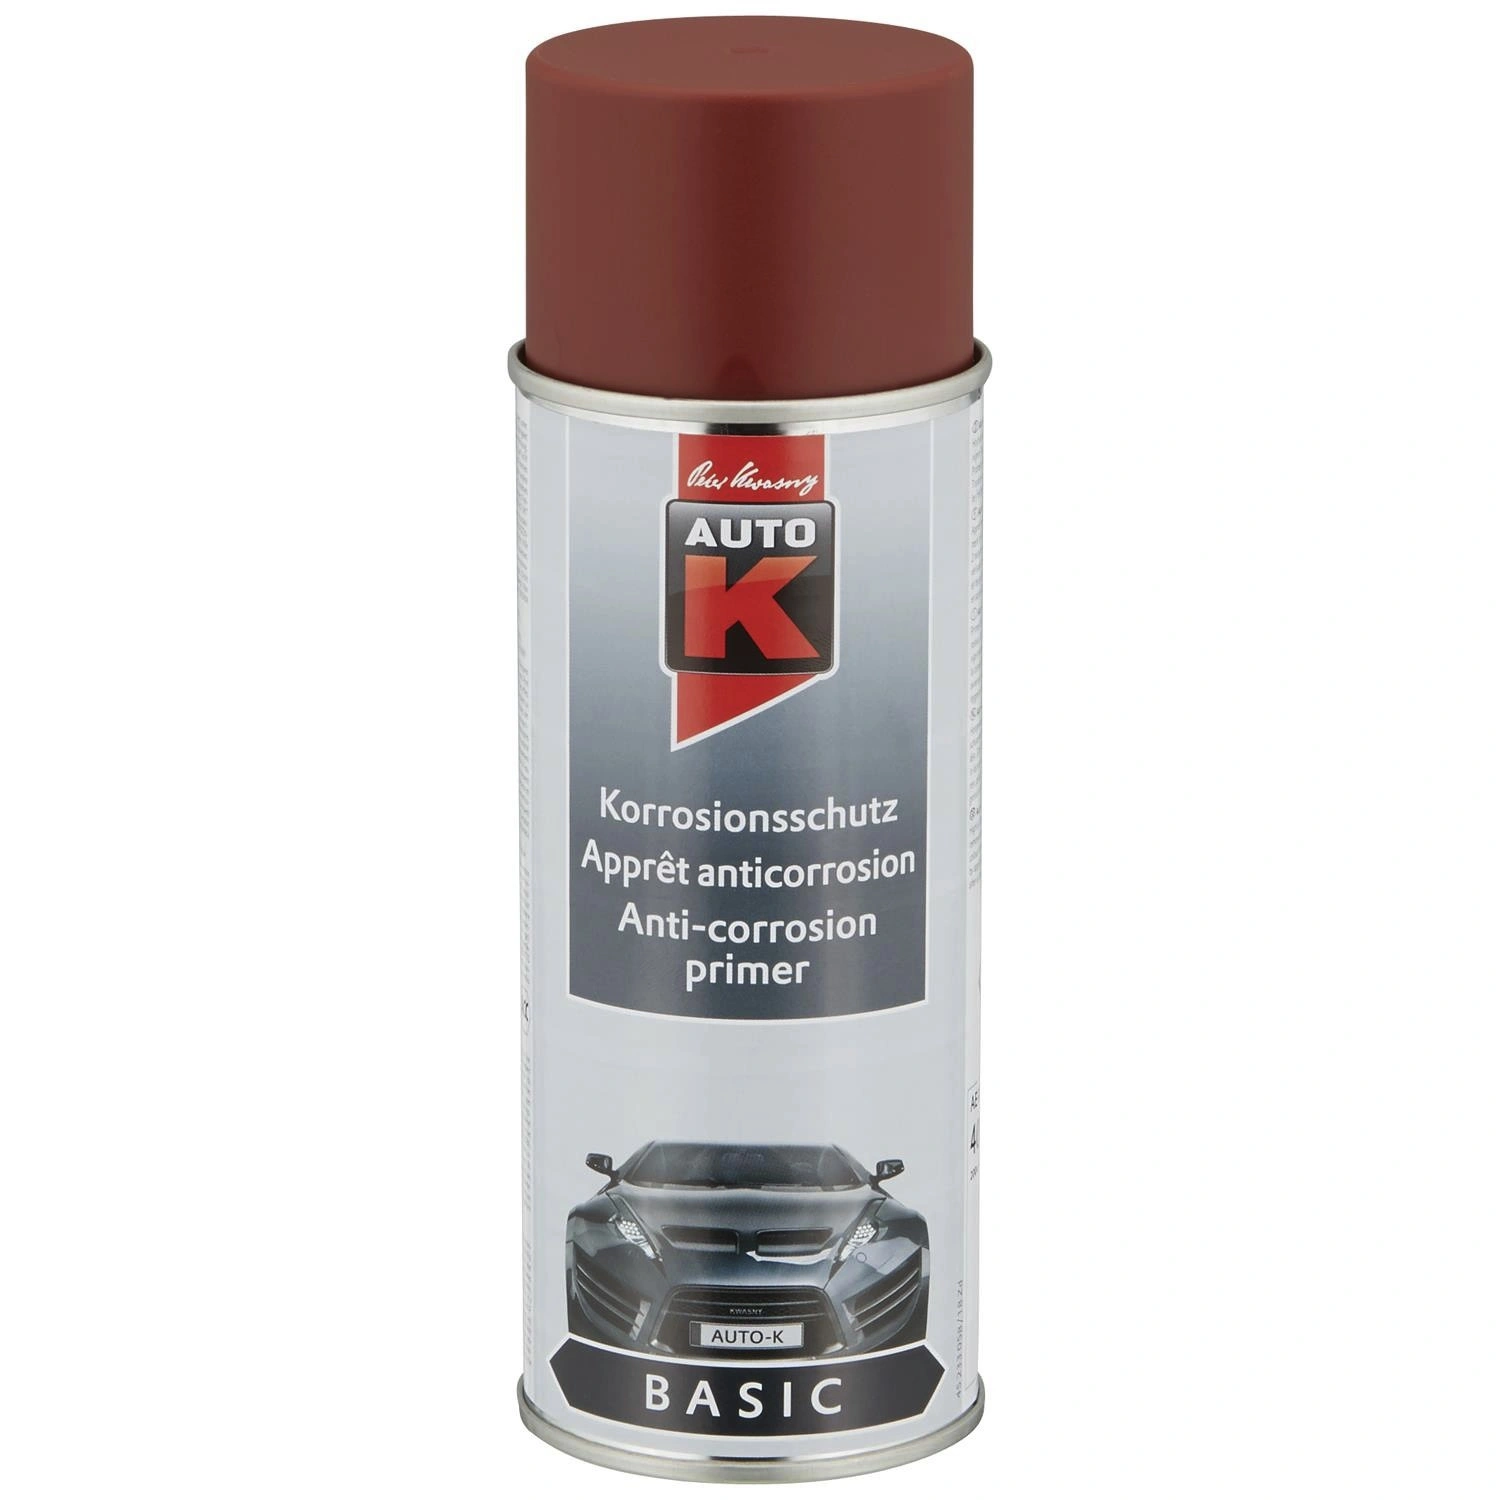 Auto-K Bremssattellack Spray gelb (400 ml)